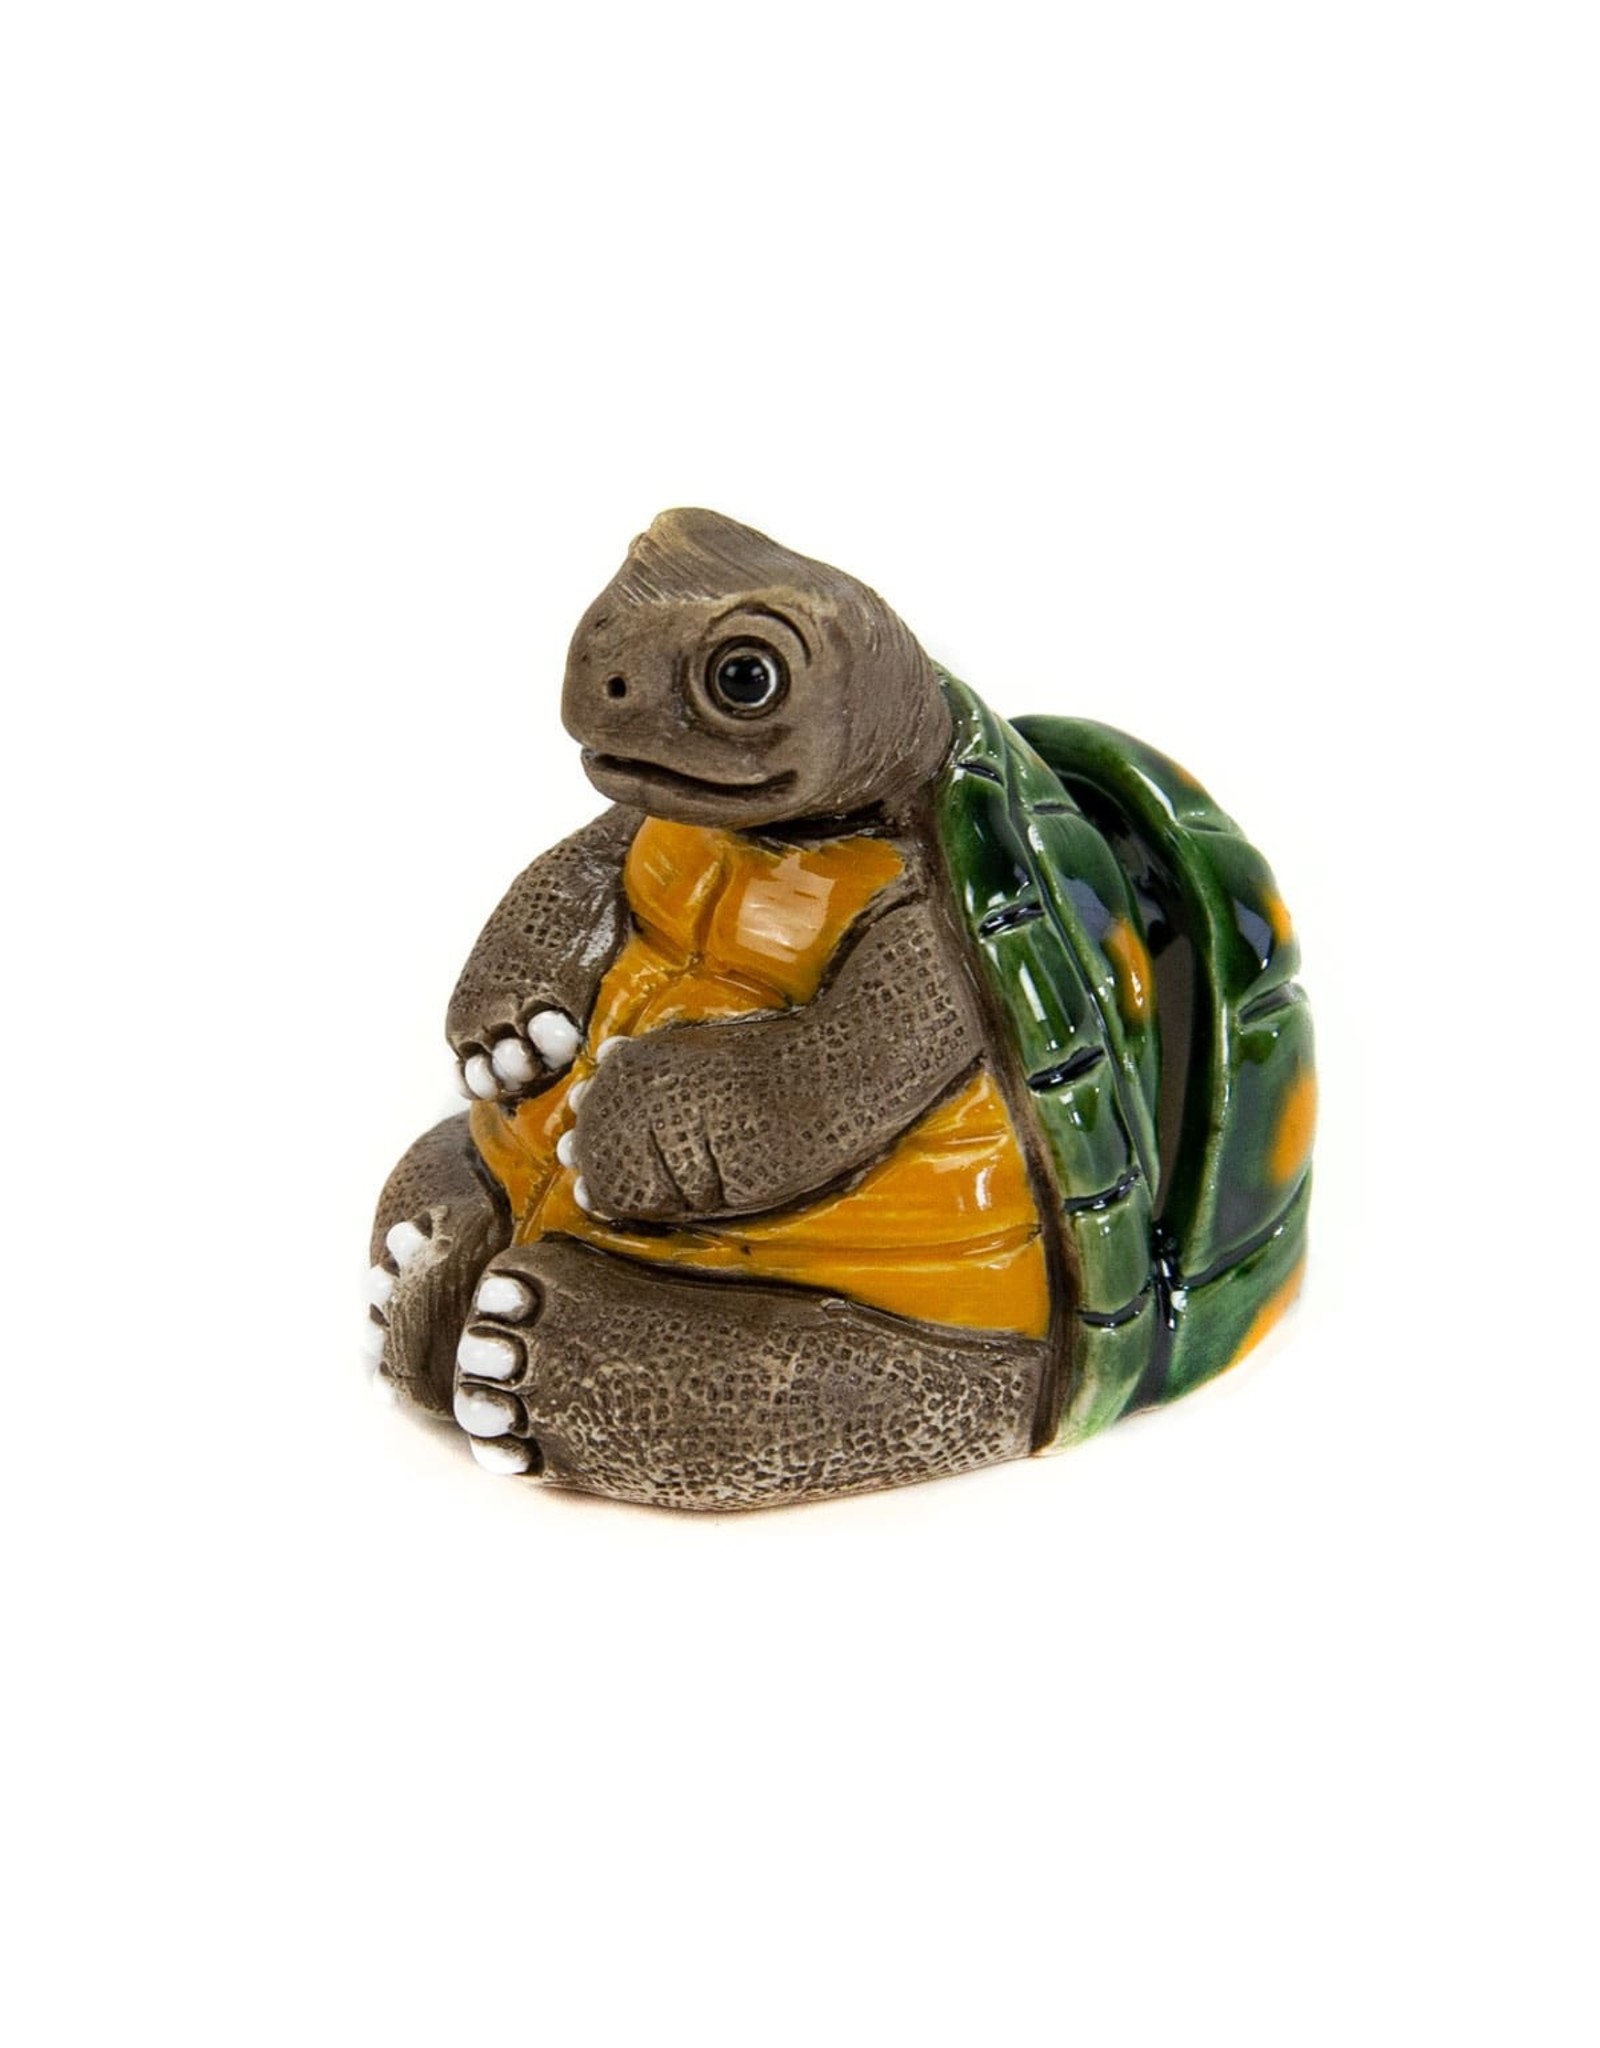 Ceramic Card Holder, Turtle, Peru